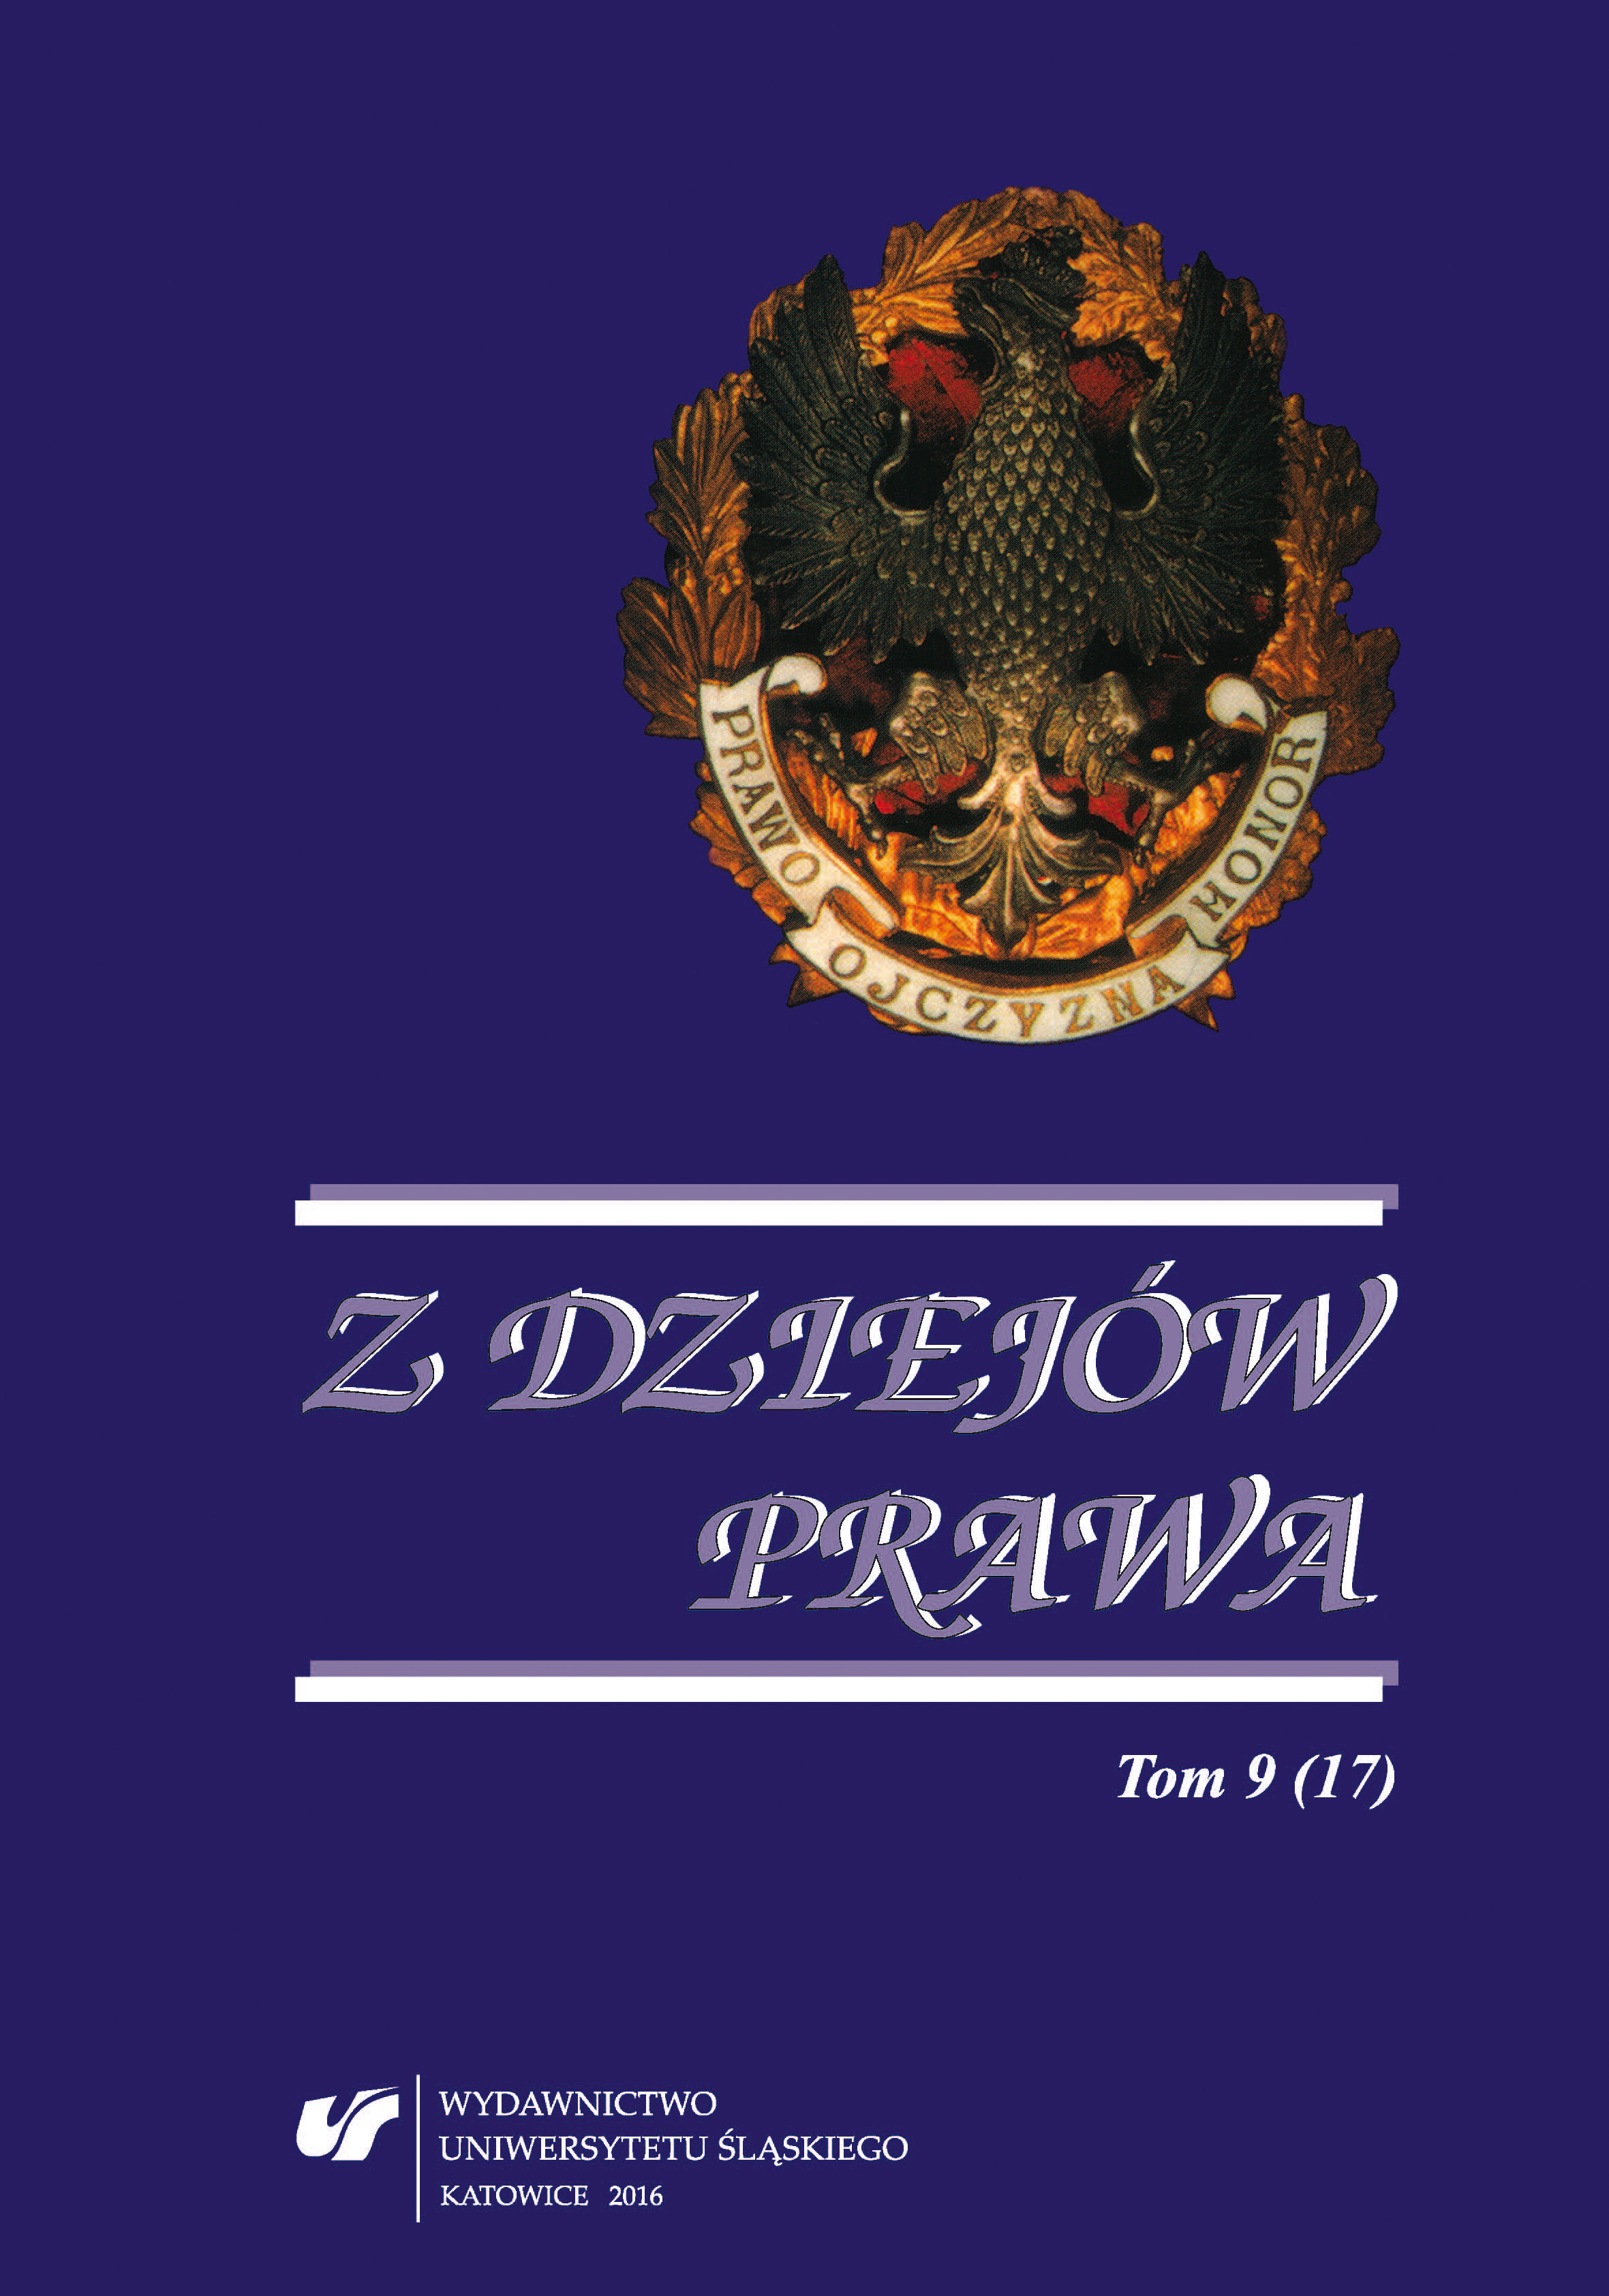 Edward Szymoszek’s Reflections in “Z Dziejów Prawa” (“From the History of the Law”) Cover Image